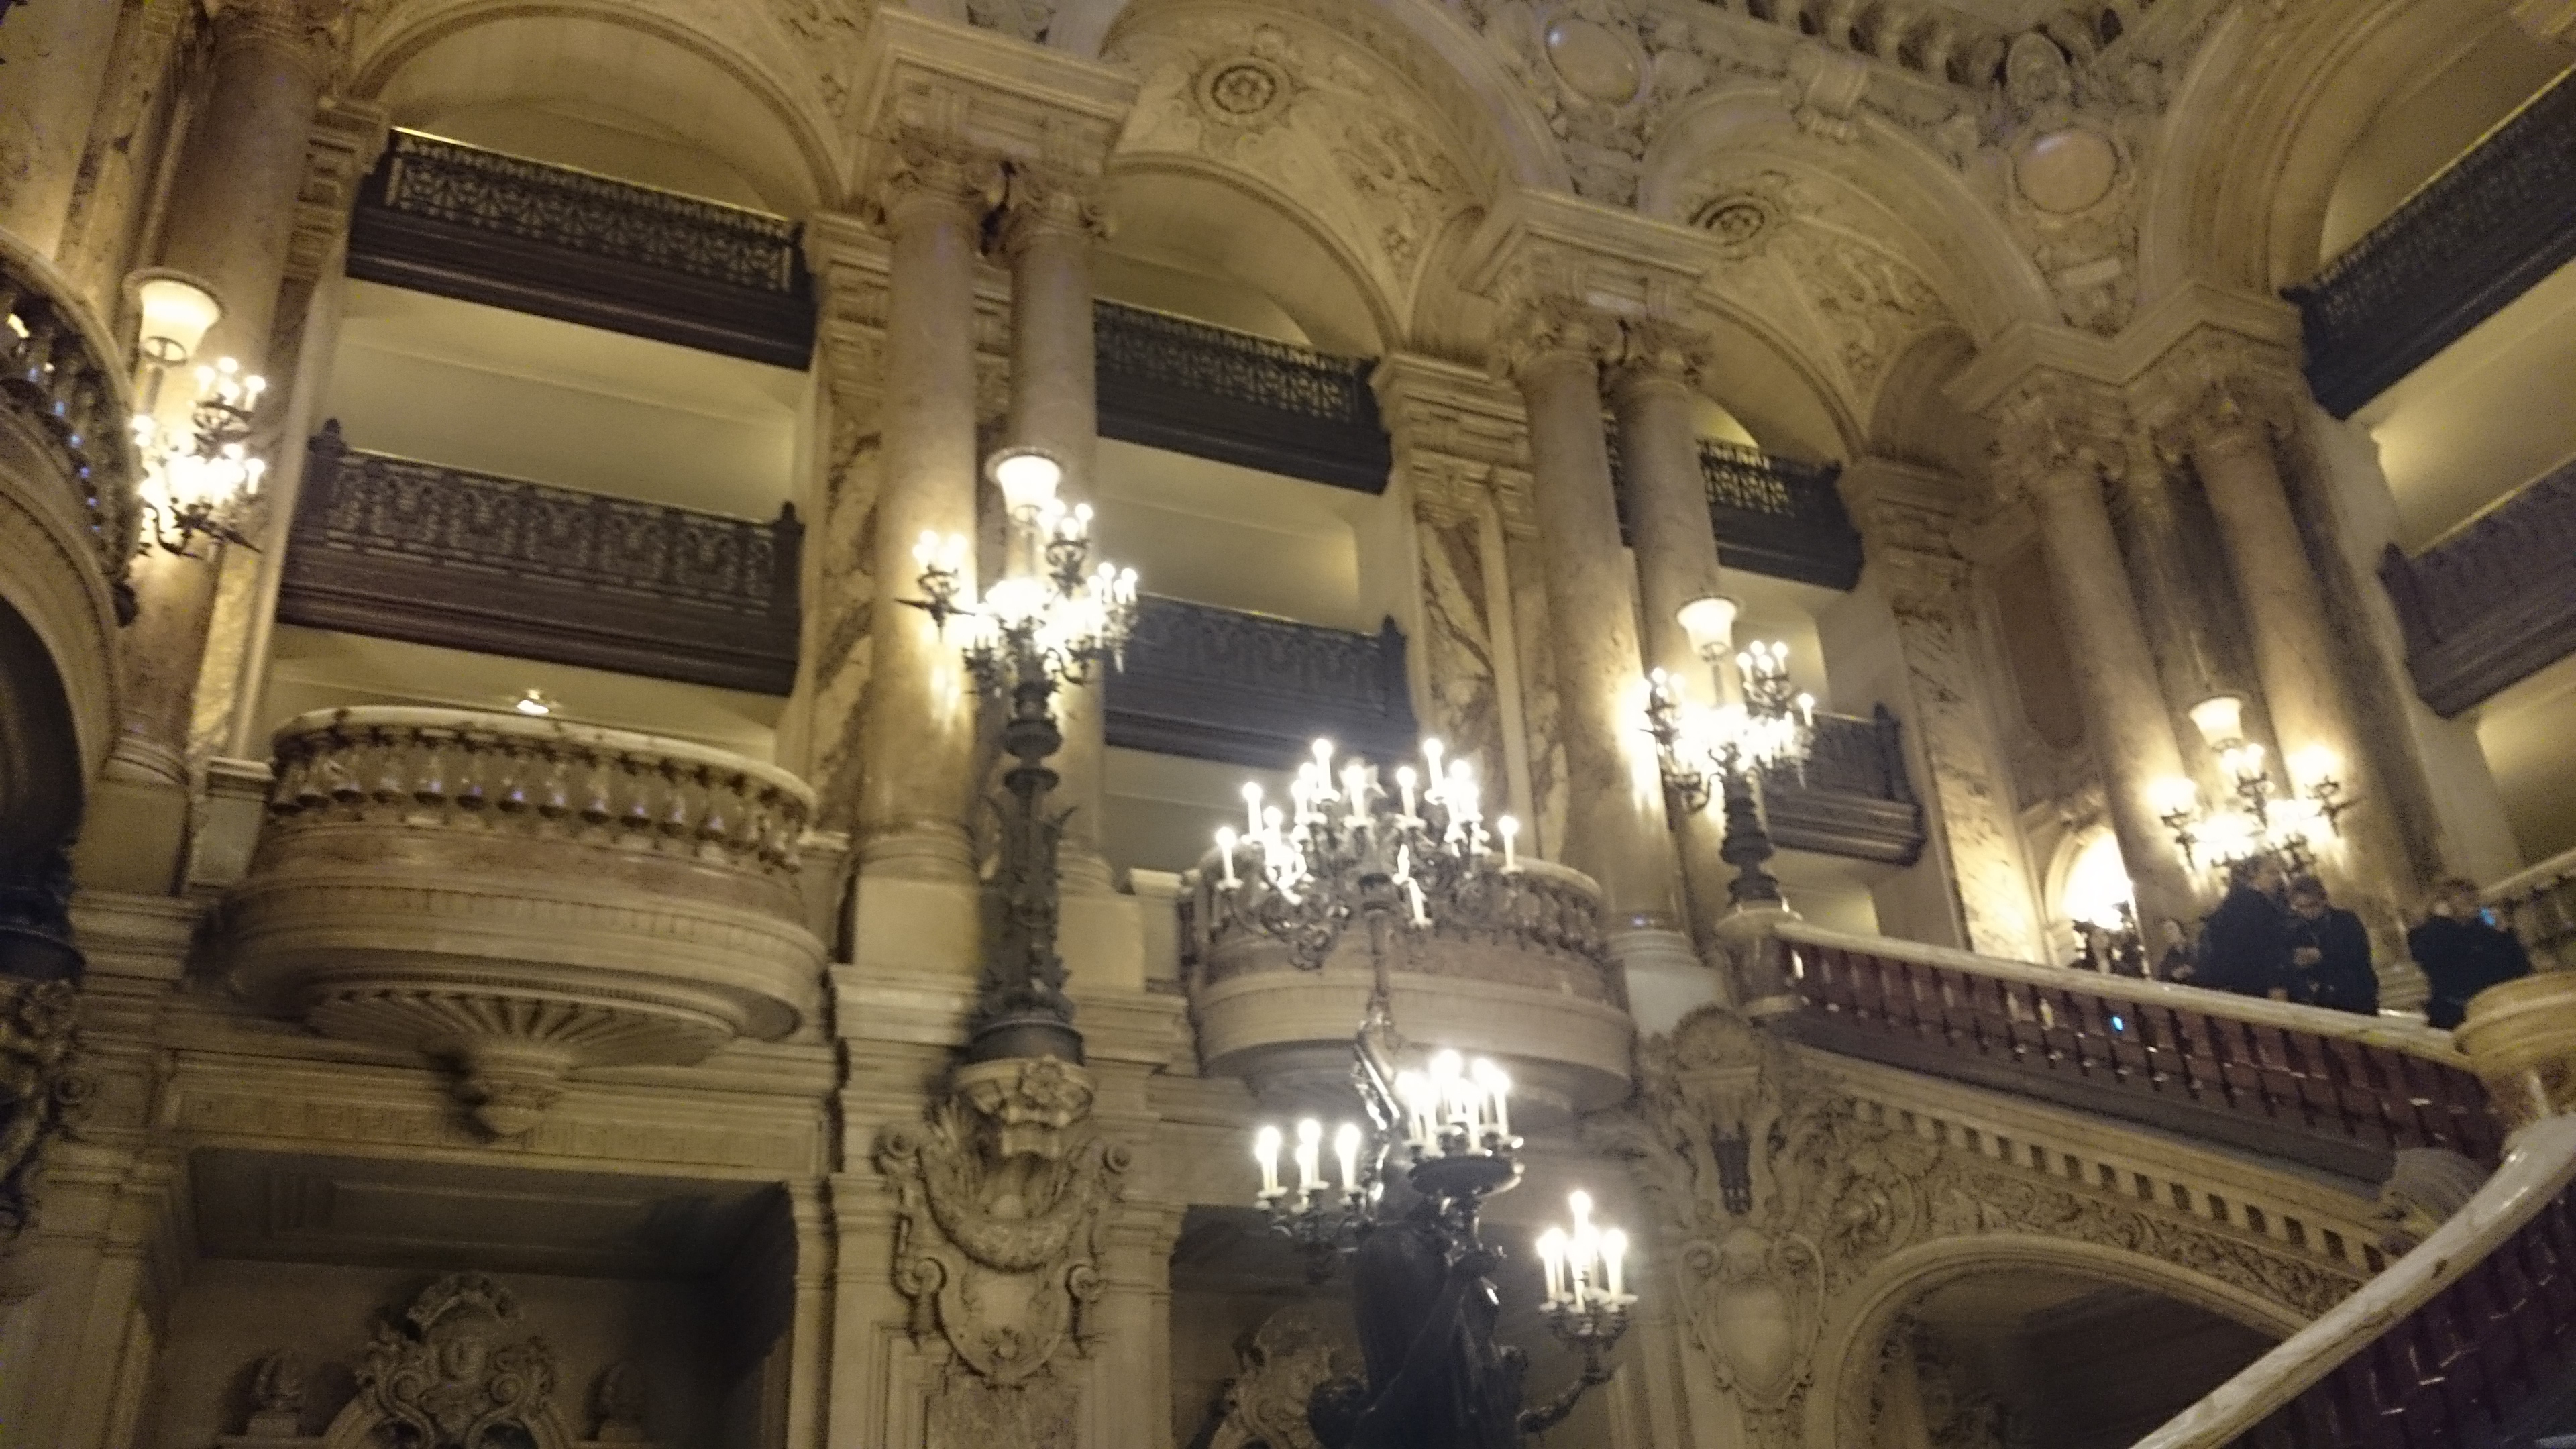 dsc 1012 - Una visita a la Opera de Paris (Palais Garnier)